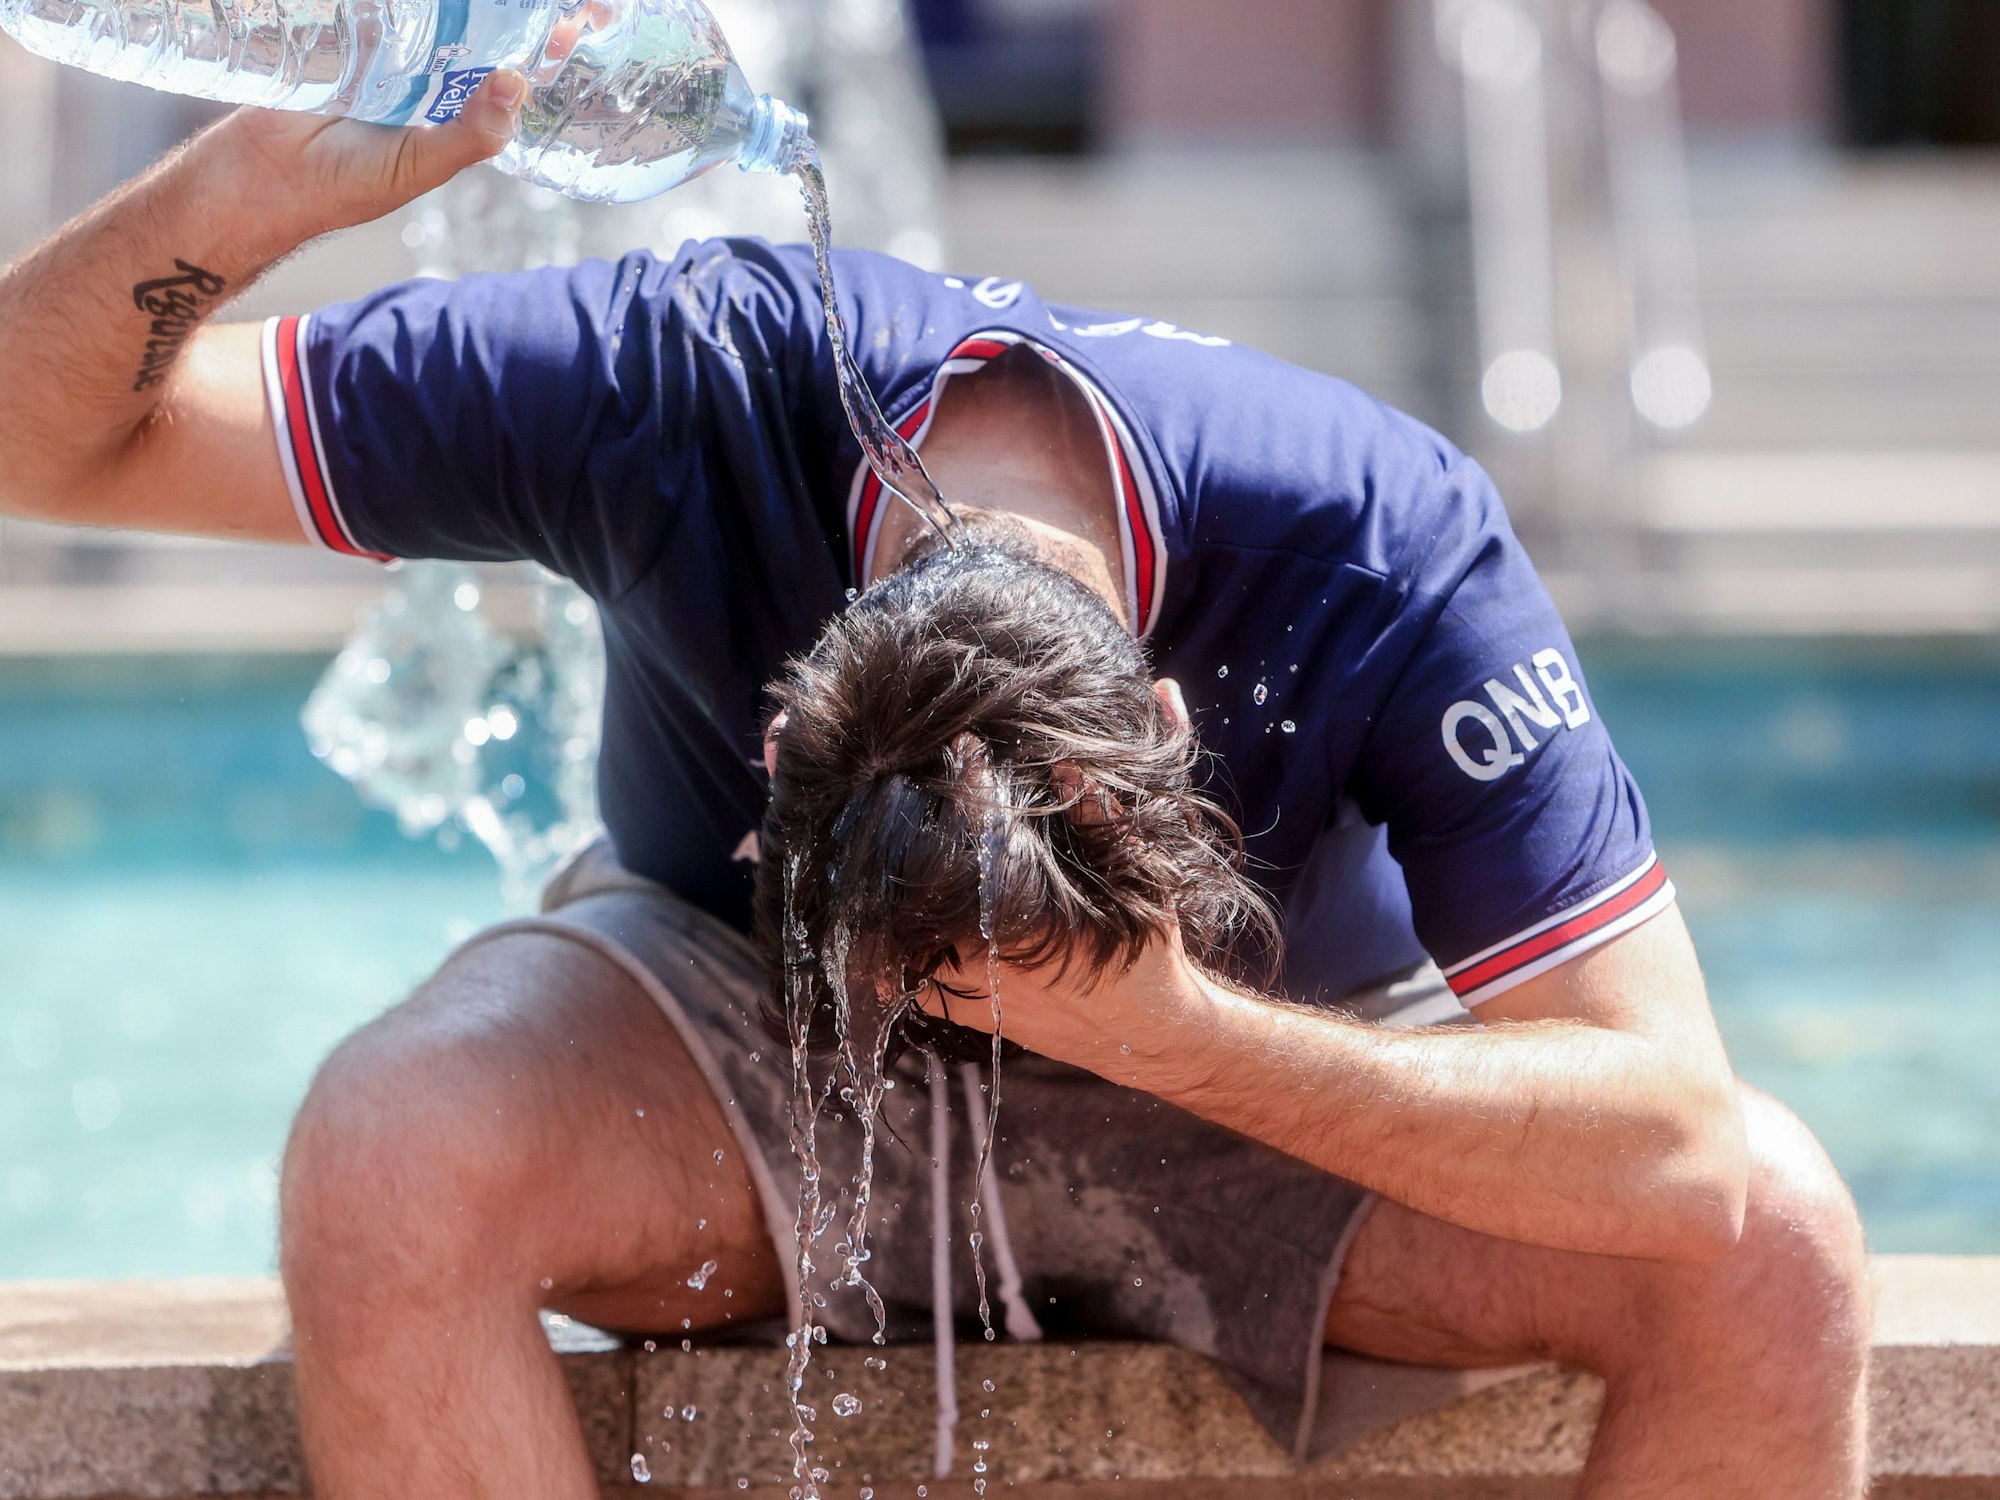 Ein junger Mann übergießt sich mit einer Wasserflasche, um die Hitze zu bekämpfen. Dieses Foto stammt aus Spanien.